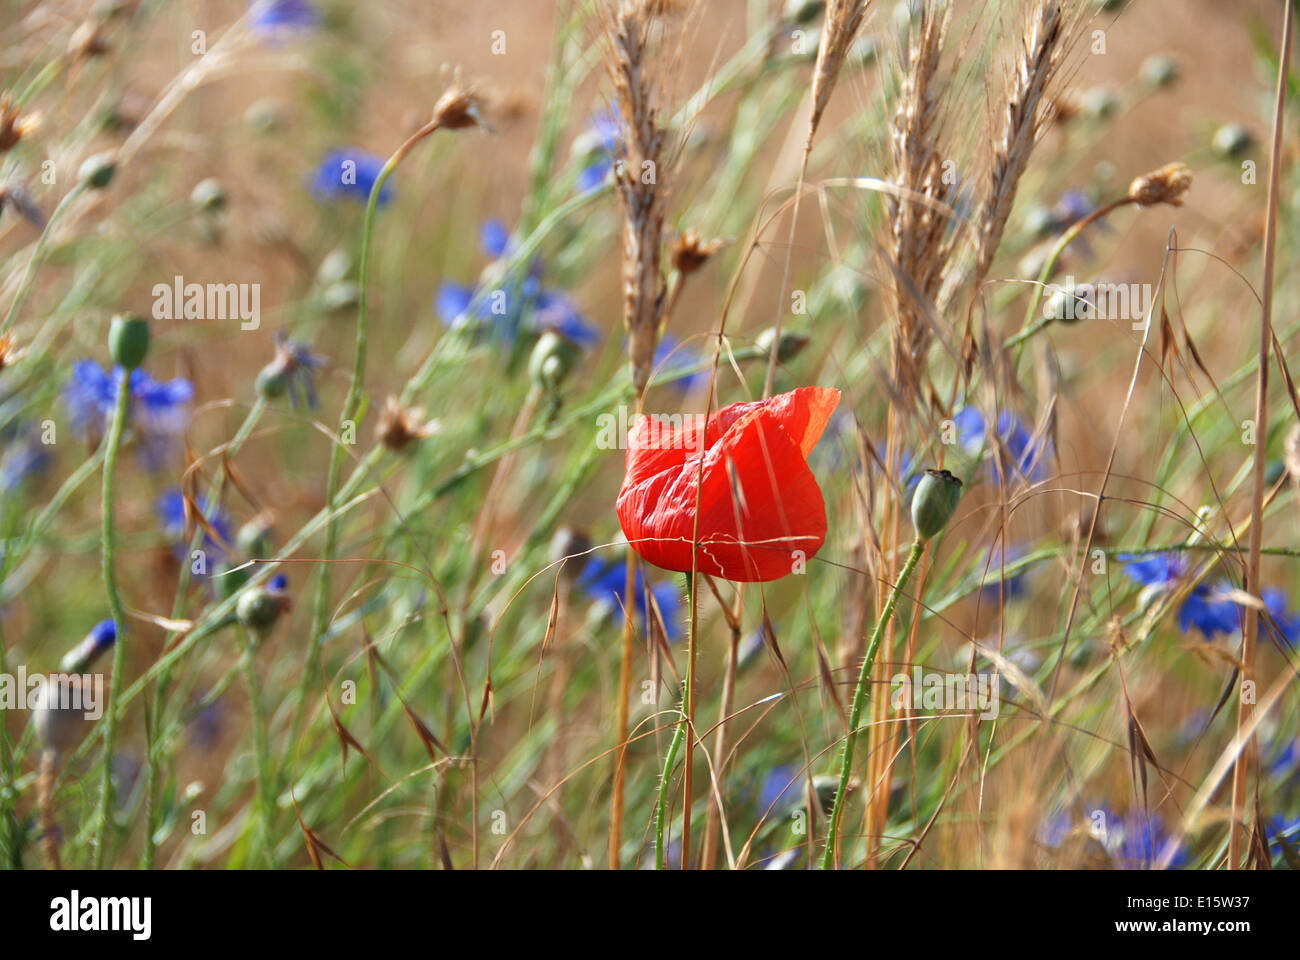 A poppy growing amongst wild cornflowers in a field of rye Stock Photo